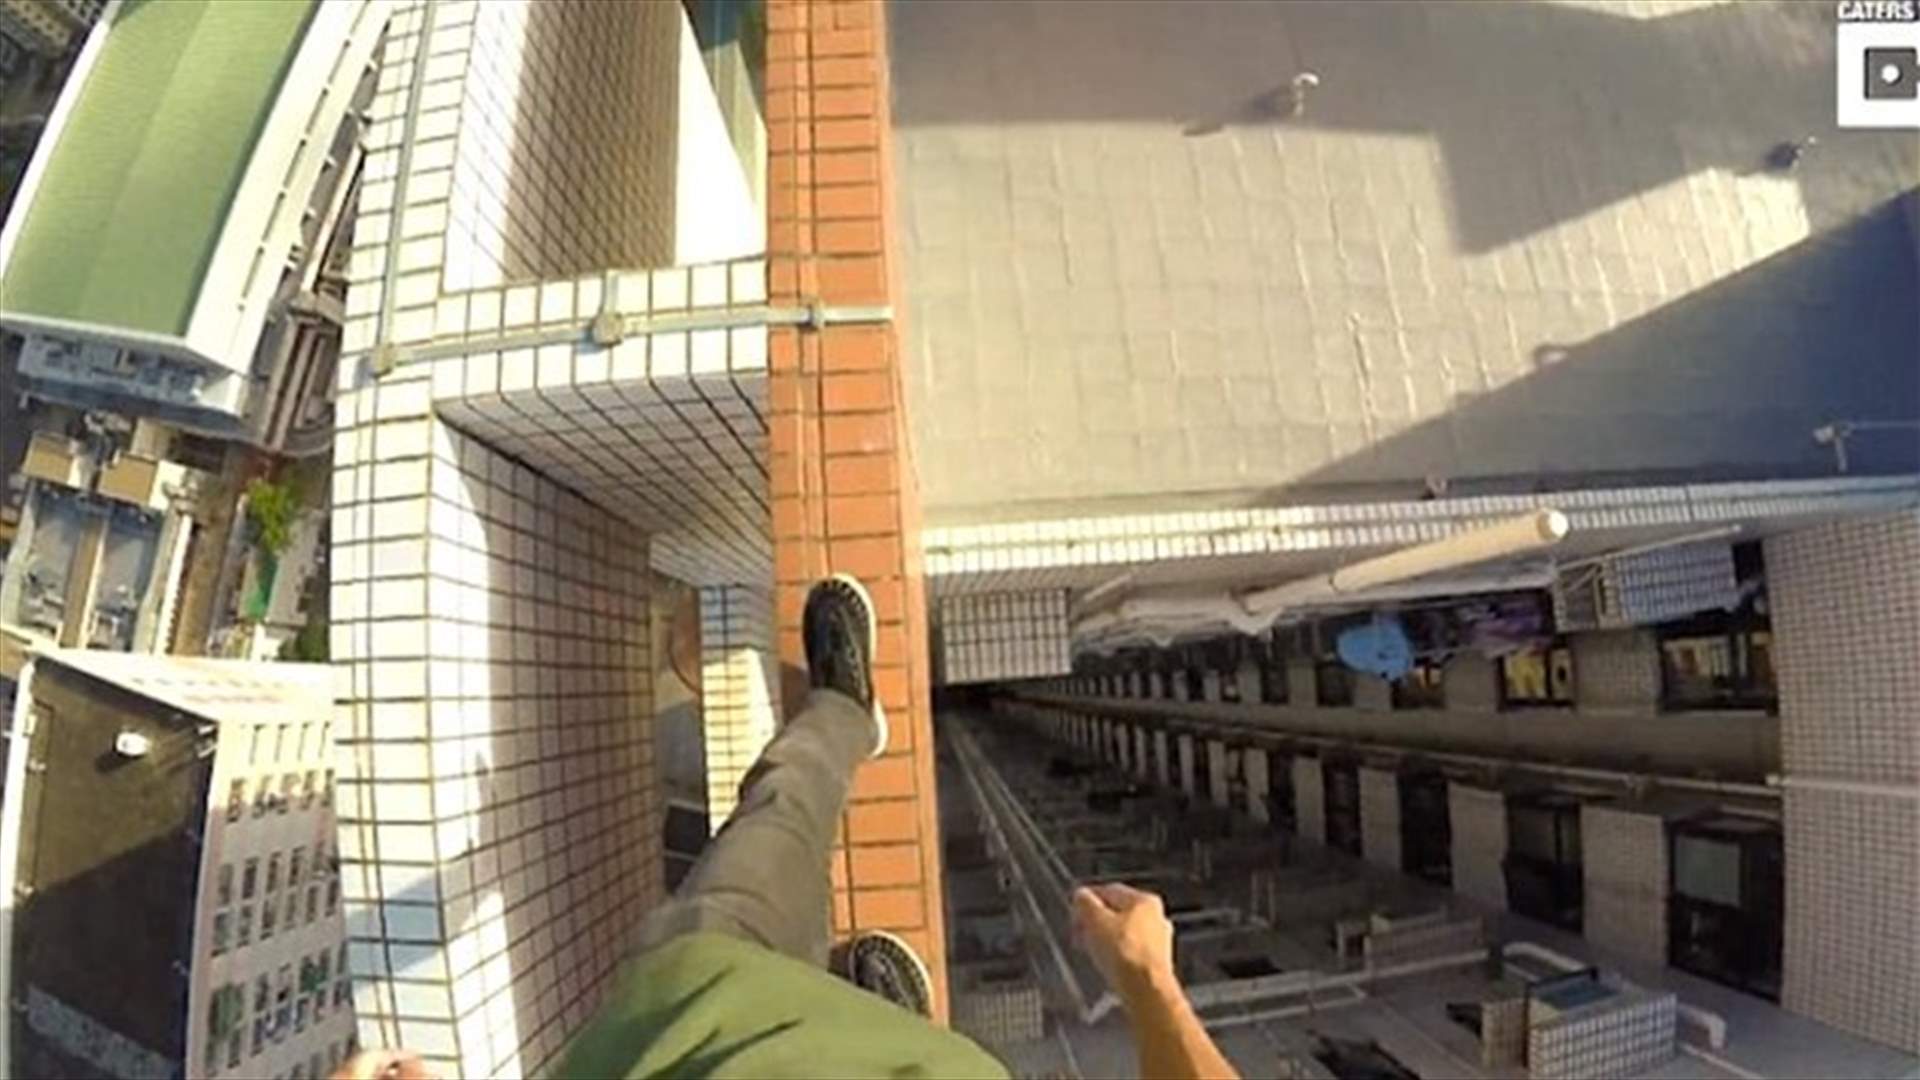 بالفيديو – شاب متهور يمشي على حافة مبنى شاهق من دون حزام أمان